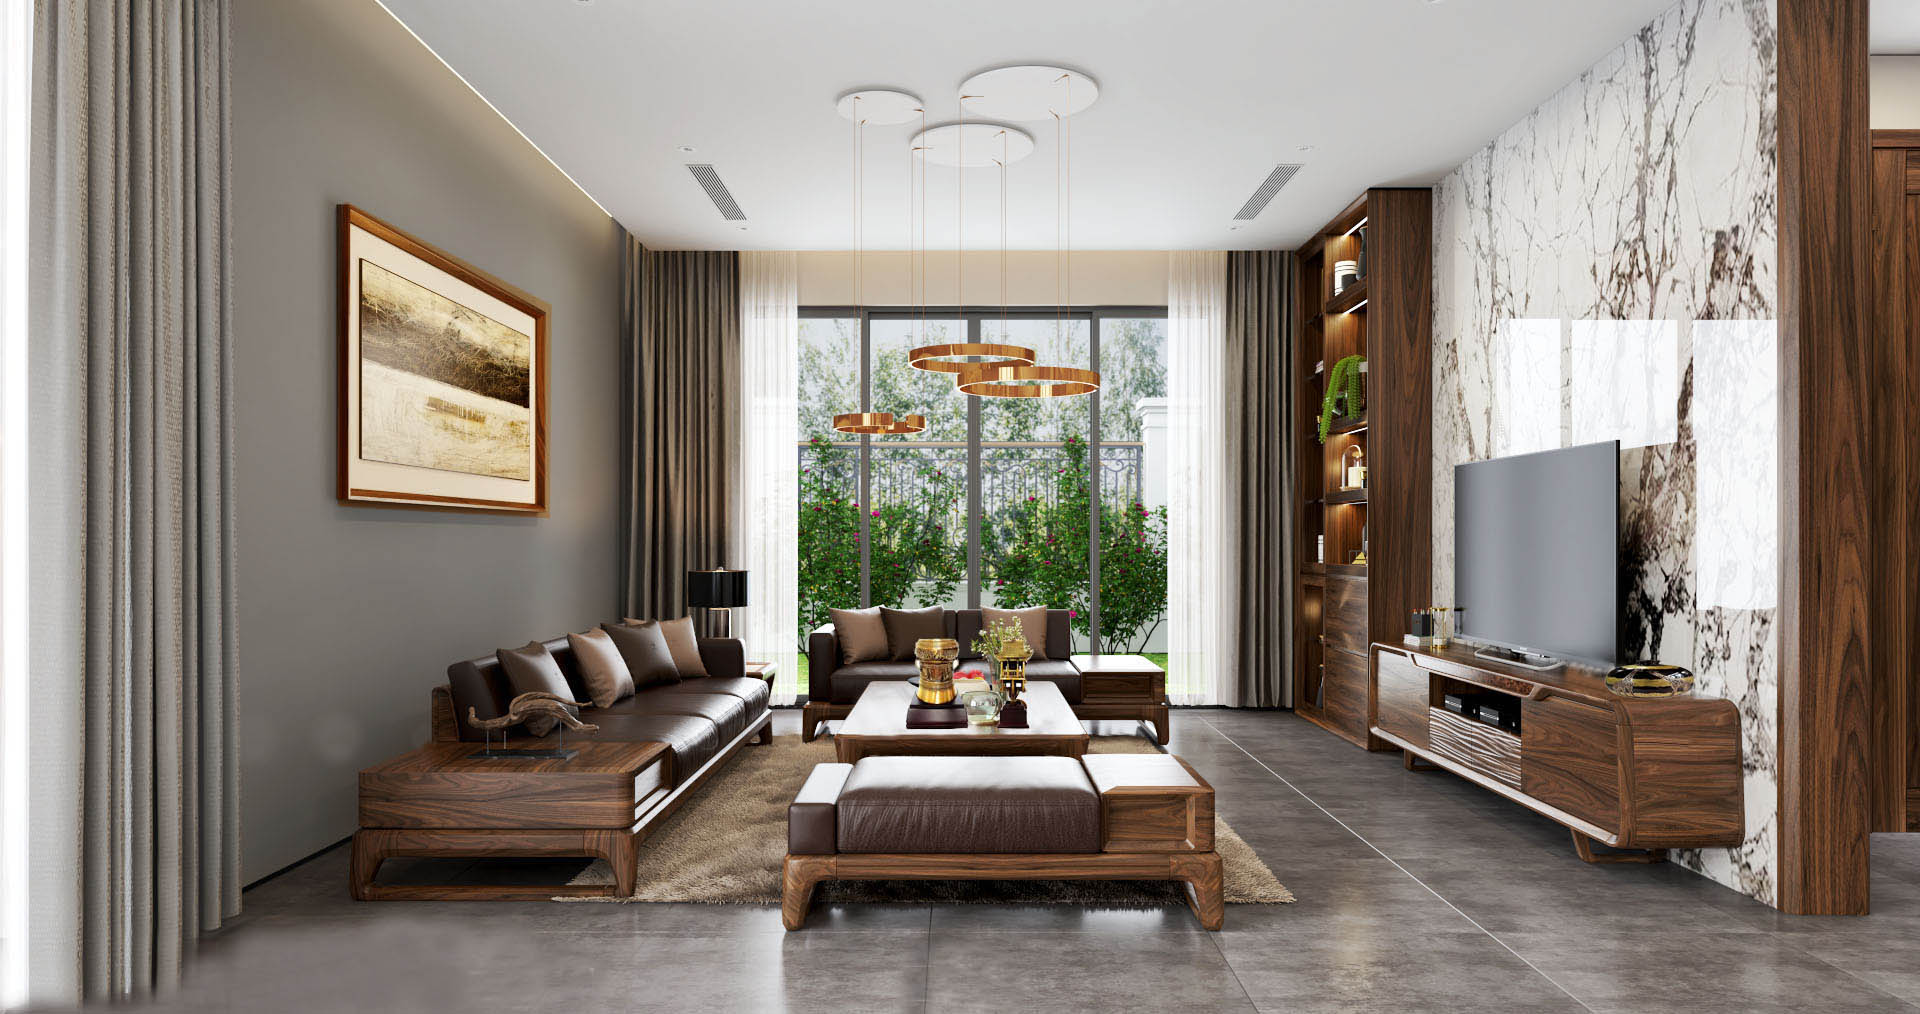 Nội thất phòng khách nhỏ: Năm 2024 đang là thời điểm lý tưởng để trang trí nội thất phòng khách nhỏ của bạn. Với những kiểu thiết kế mới nhất, đầy màu sắc và đa dạng, bạn có thể tạo ra một không gian độc đáo, thân thiện và ấn tượng. Hãy khám phá những cách bố trí, sắp xếp nội thất được sắp đặt để tối đa hóa không gian cho phòng khách nhỏ của bạn.